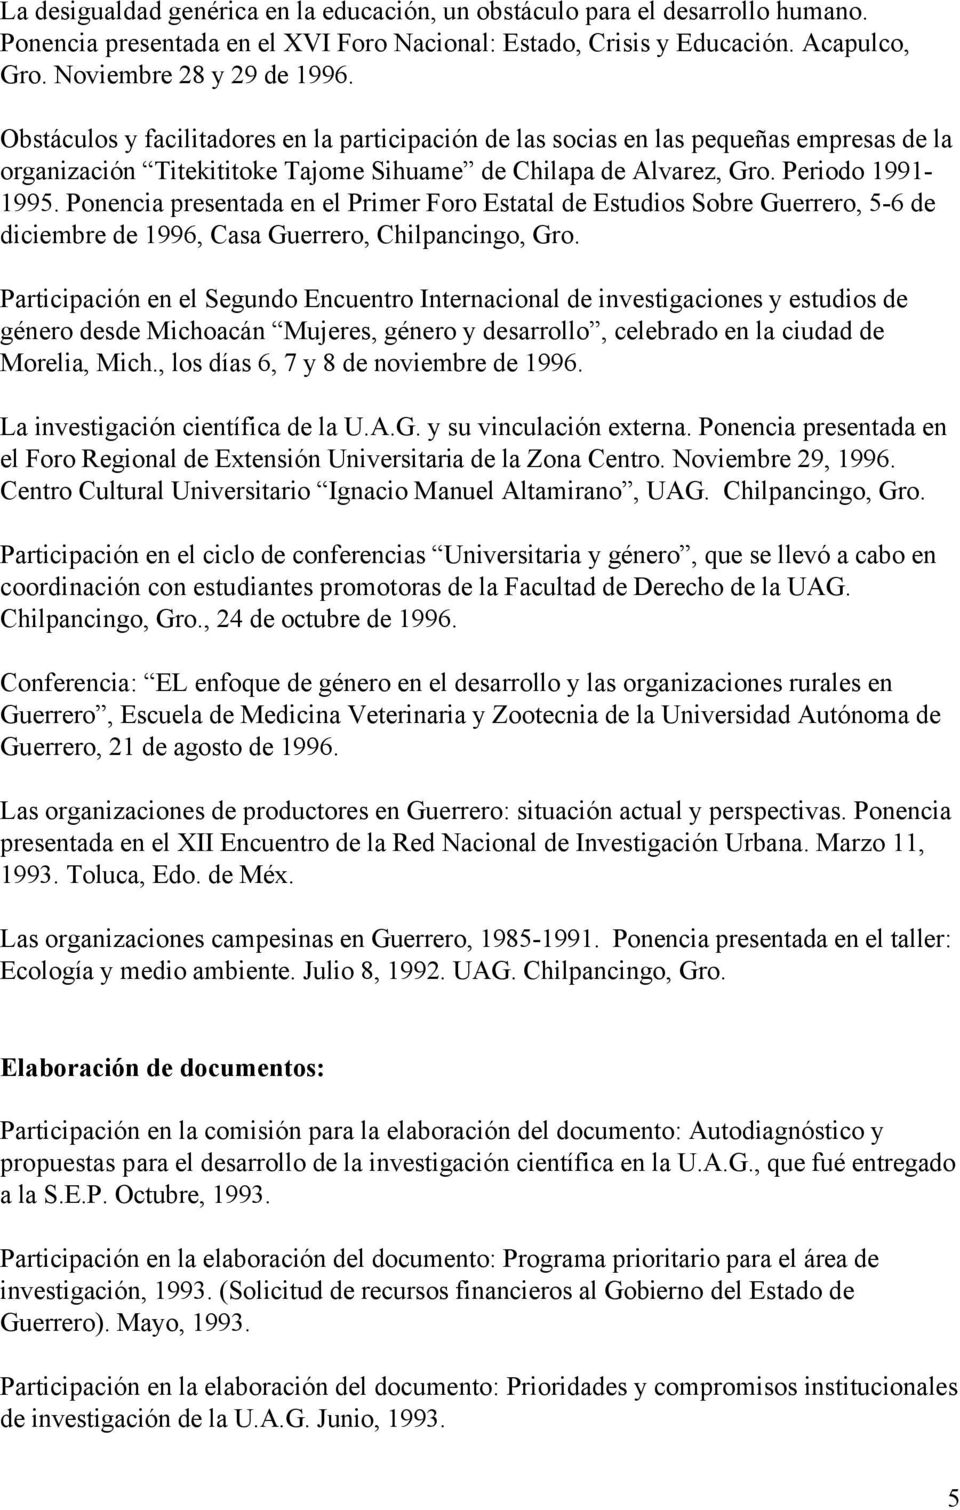 Ponencia presentada en el Primer Foro Estatal de Estudios Sobre Guerrero, 5-6 de diciembre de 1996, Casa Guerrero, Participación en el Segundo Encuentro Internacional de investigaciones y estudios de